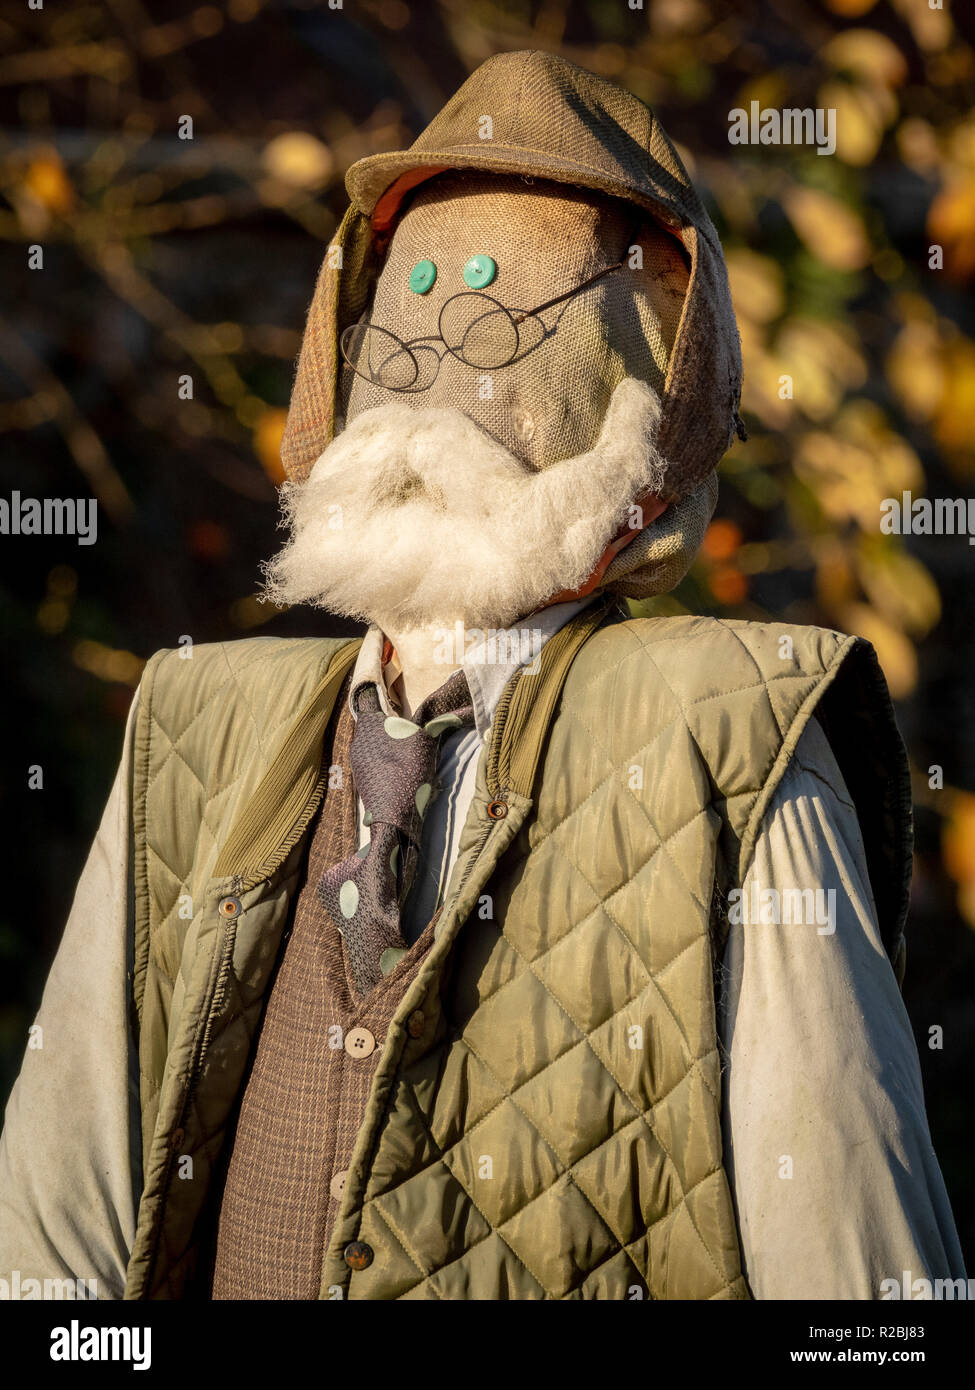 El Espantapájaros, basado en el hombre viejo con barba, gafas redondas y sombrero como el Sr. McGreggor Foto de stock